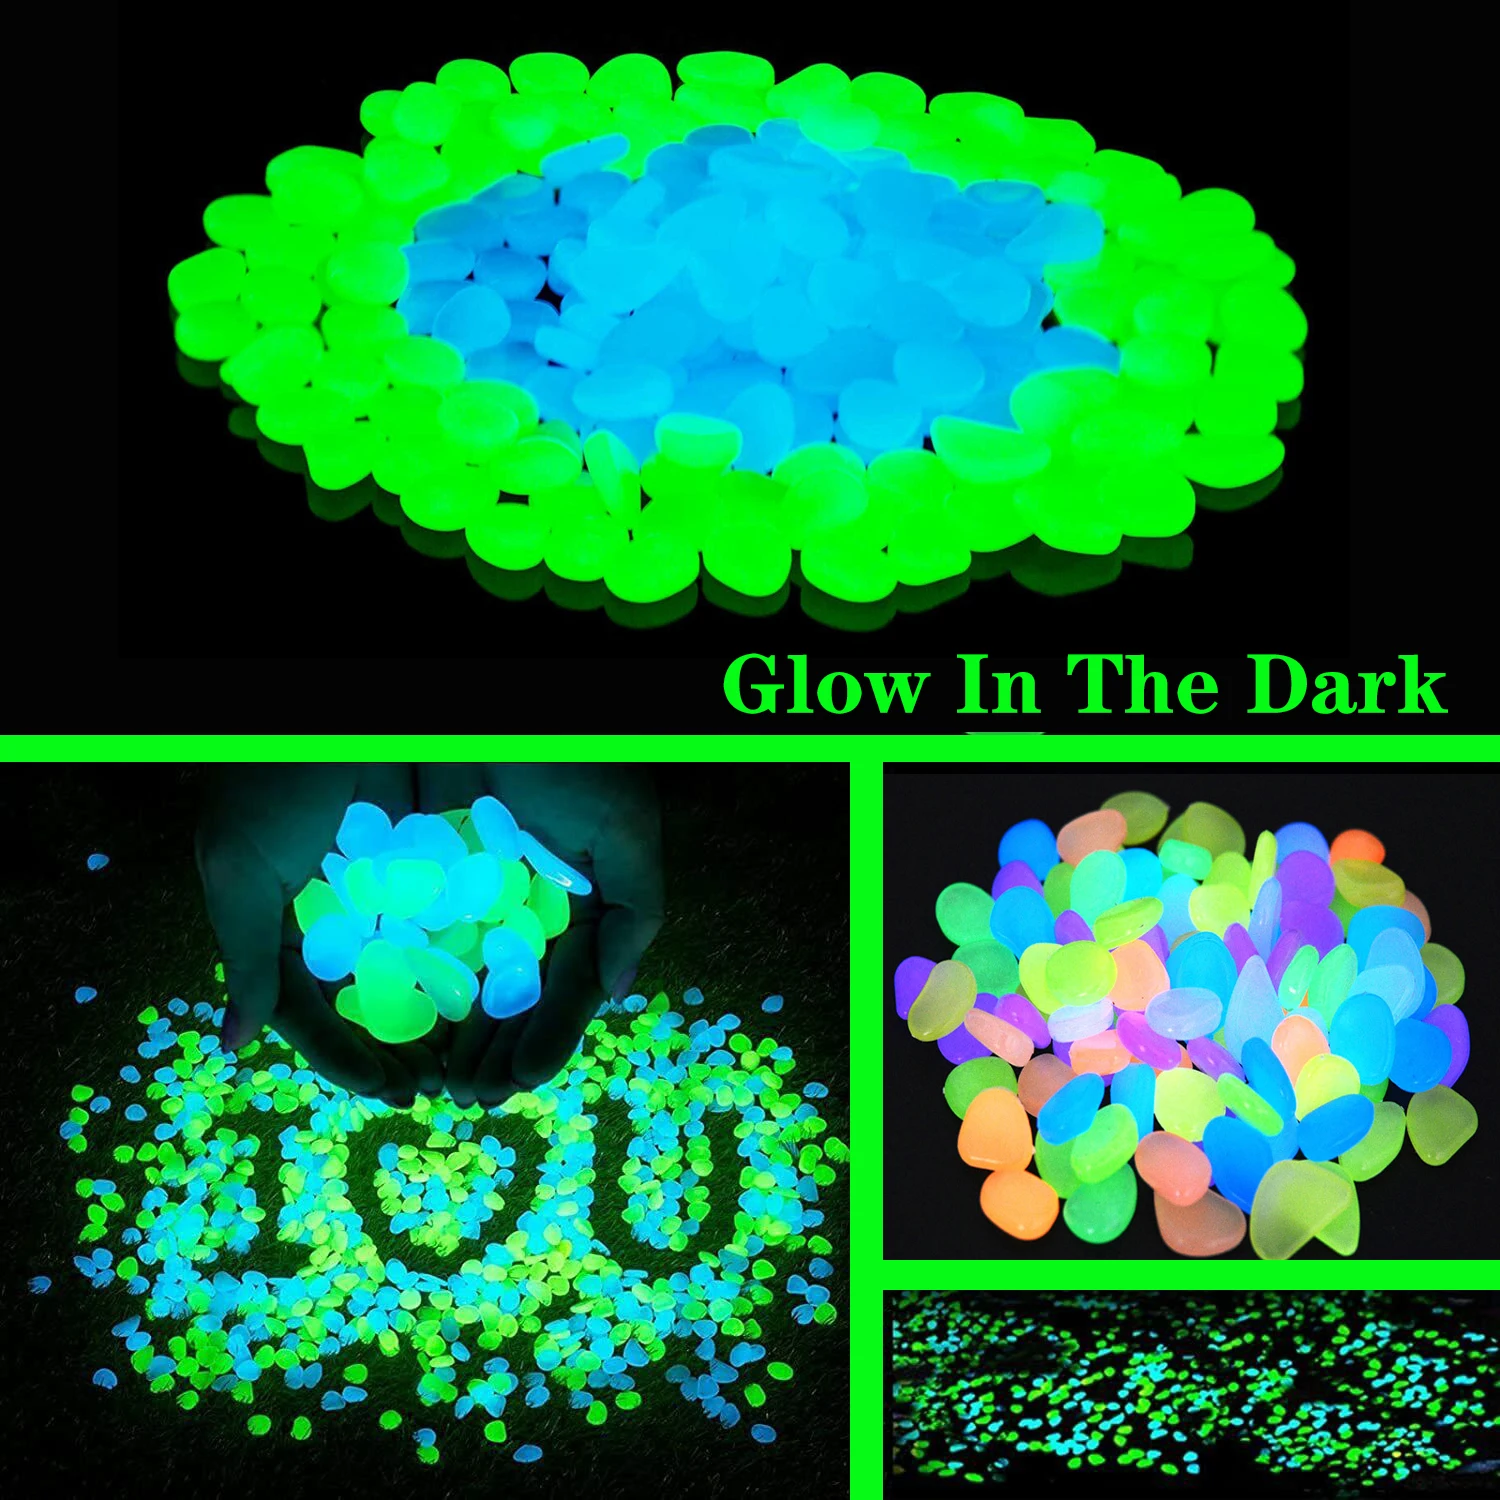 Glow in The Dark Stones Garden Pebbles Rocks Indoor Outdoor Decor Luminous Stone For Walkways Driveway Yard Grass Fish Tank